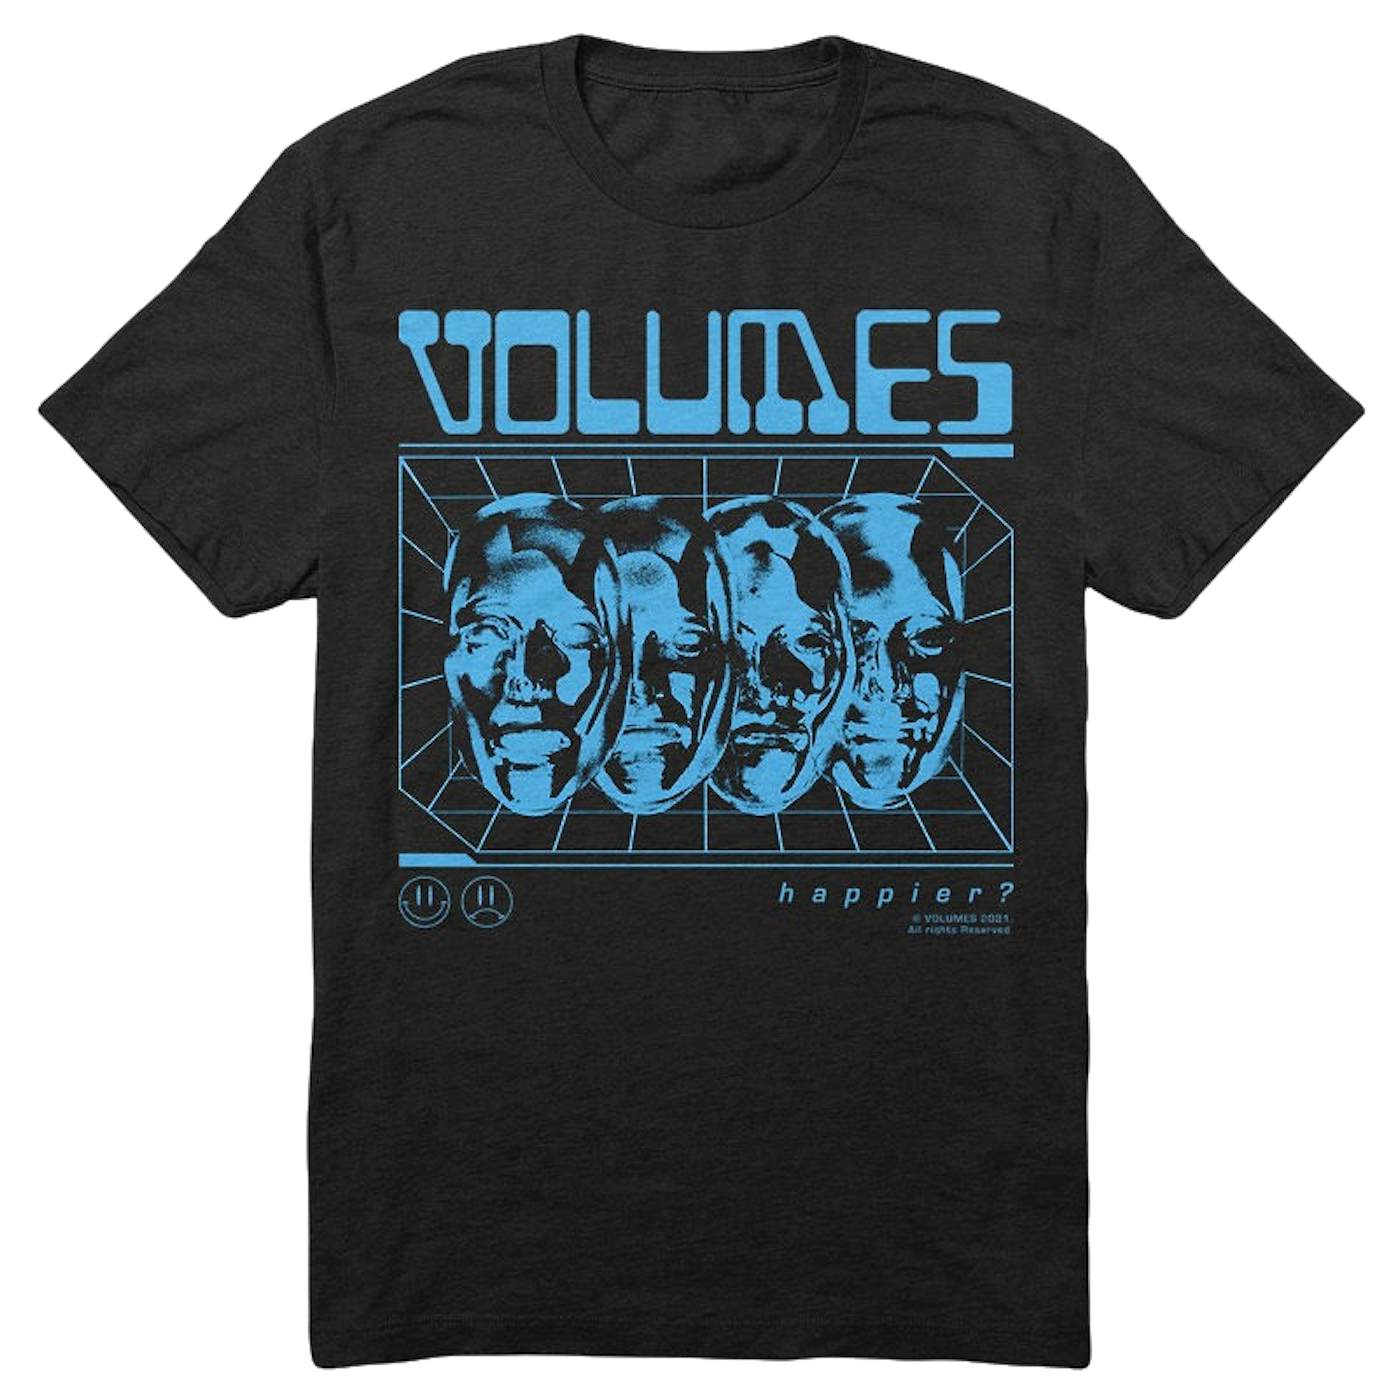 Volumes "3D Faces" T-Shirt